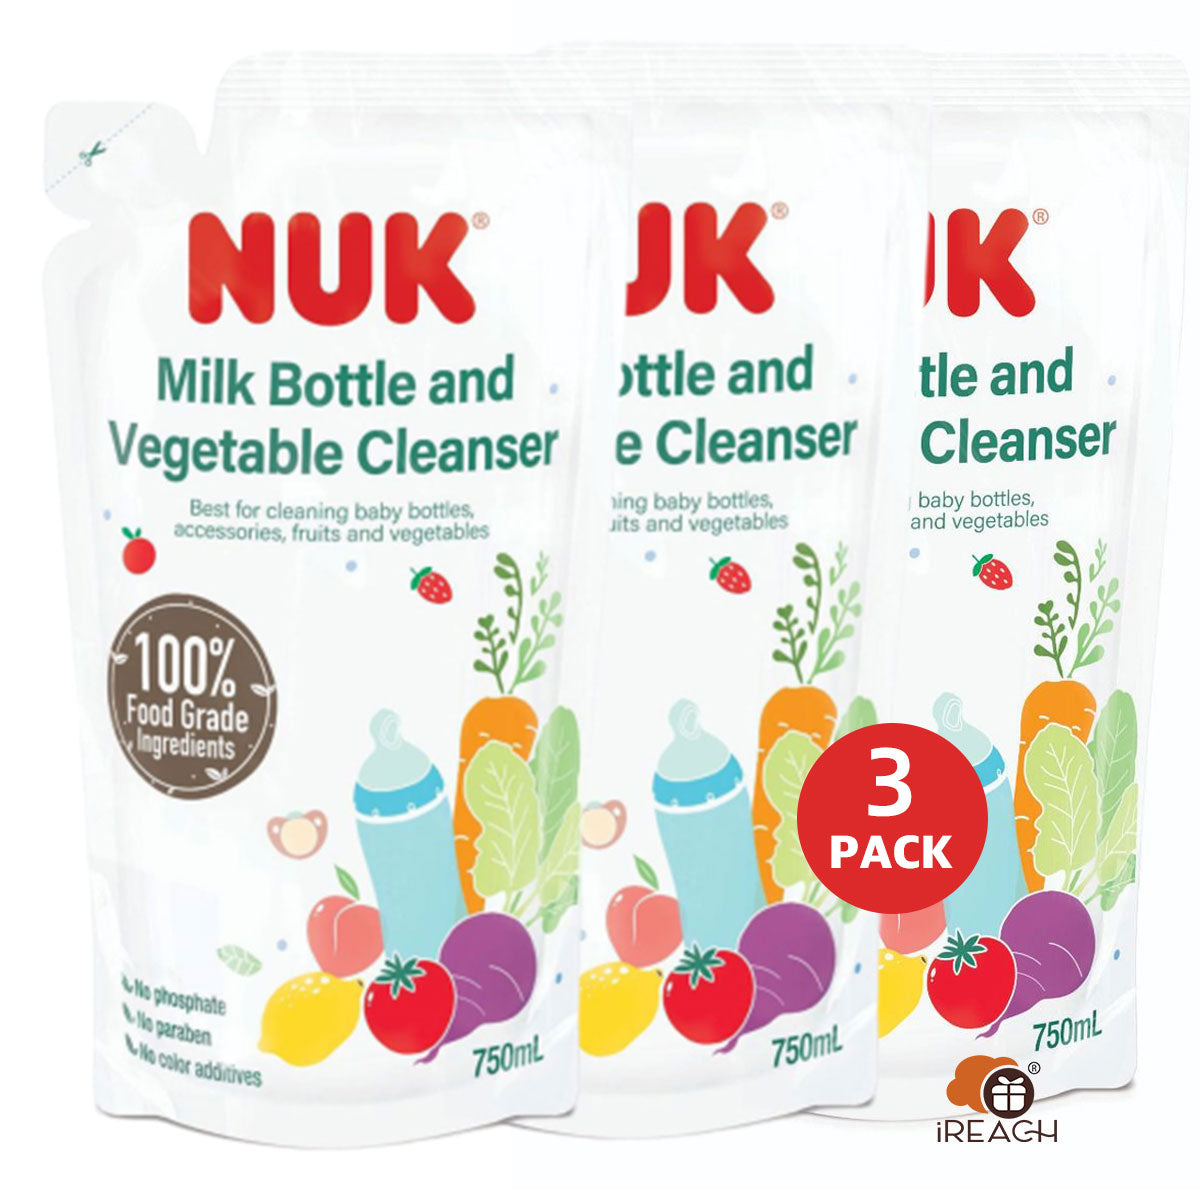 NUK Milk Bottle and Vegetable Cleanser - Refill 750mL